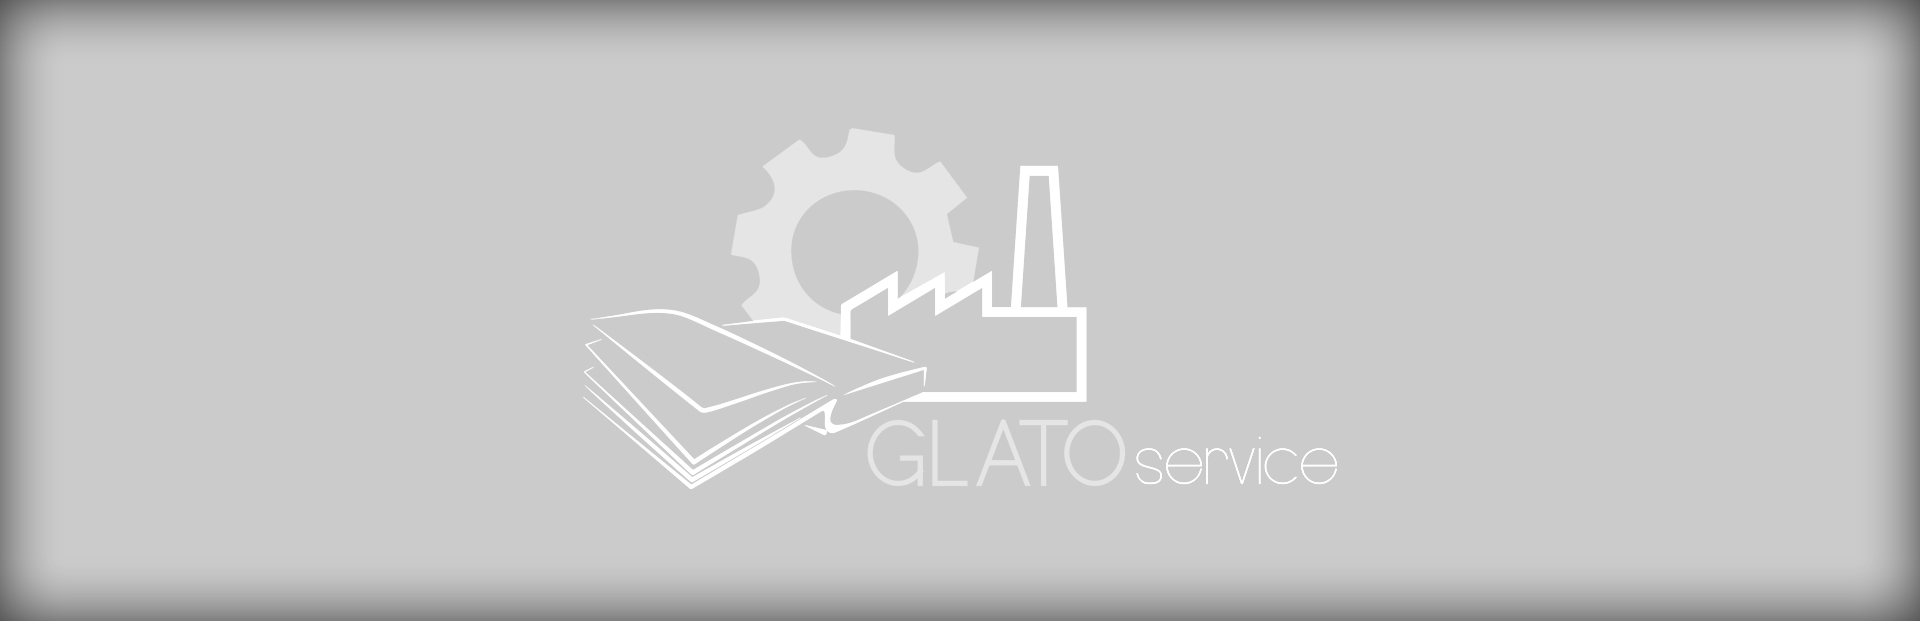 Prototipo GLATO-service